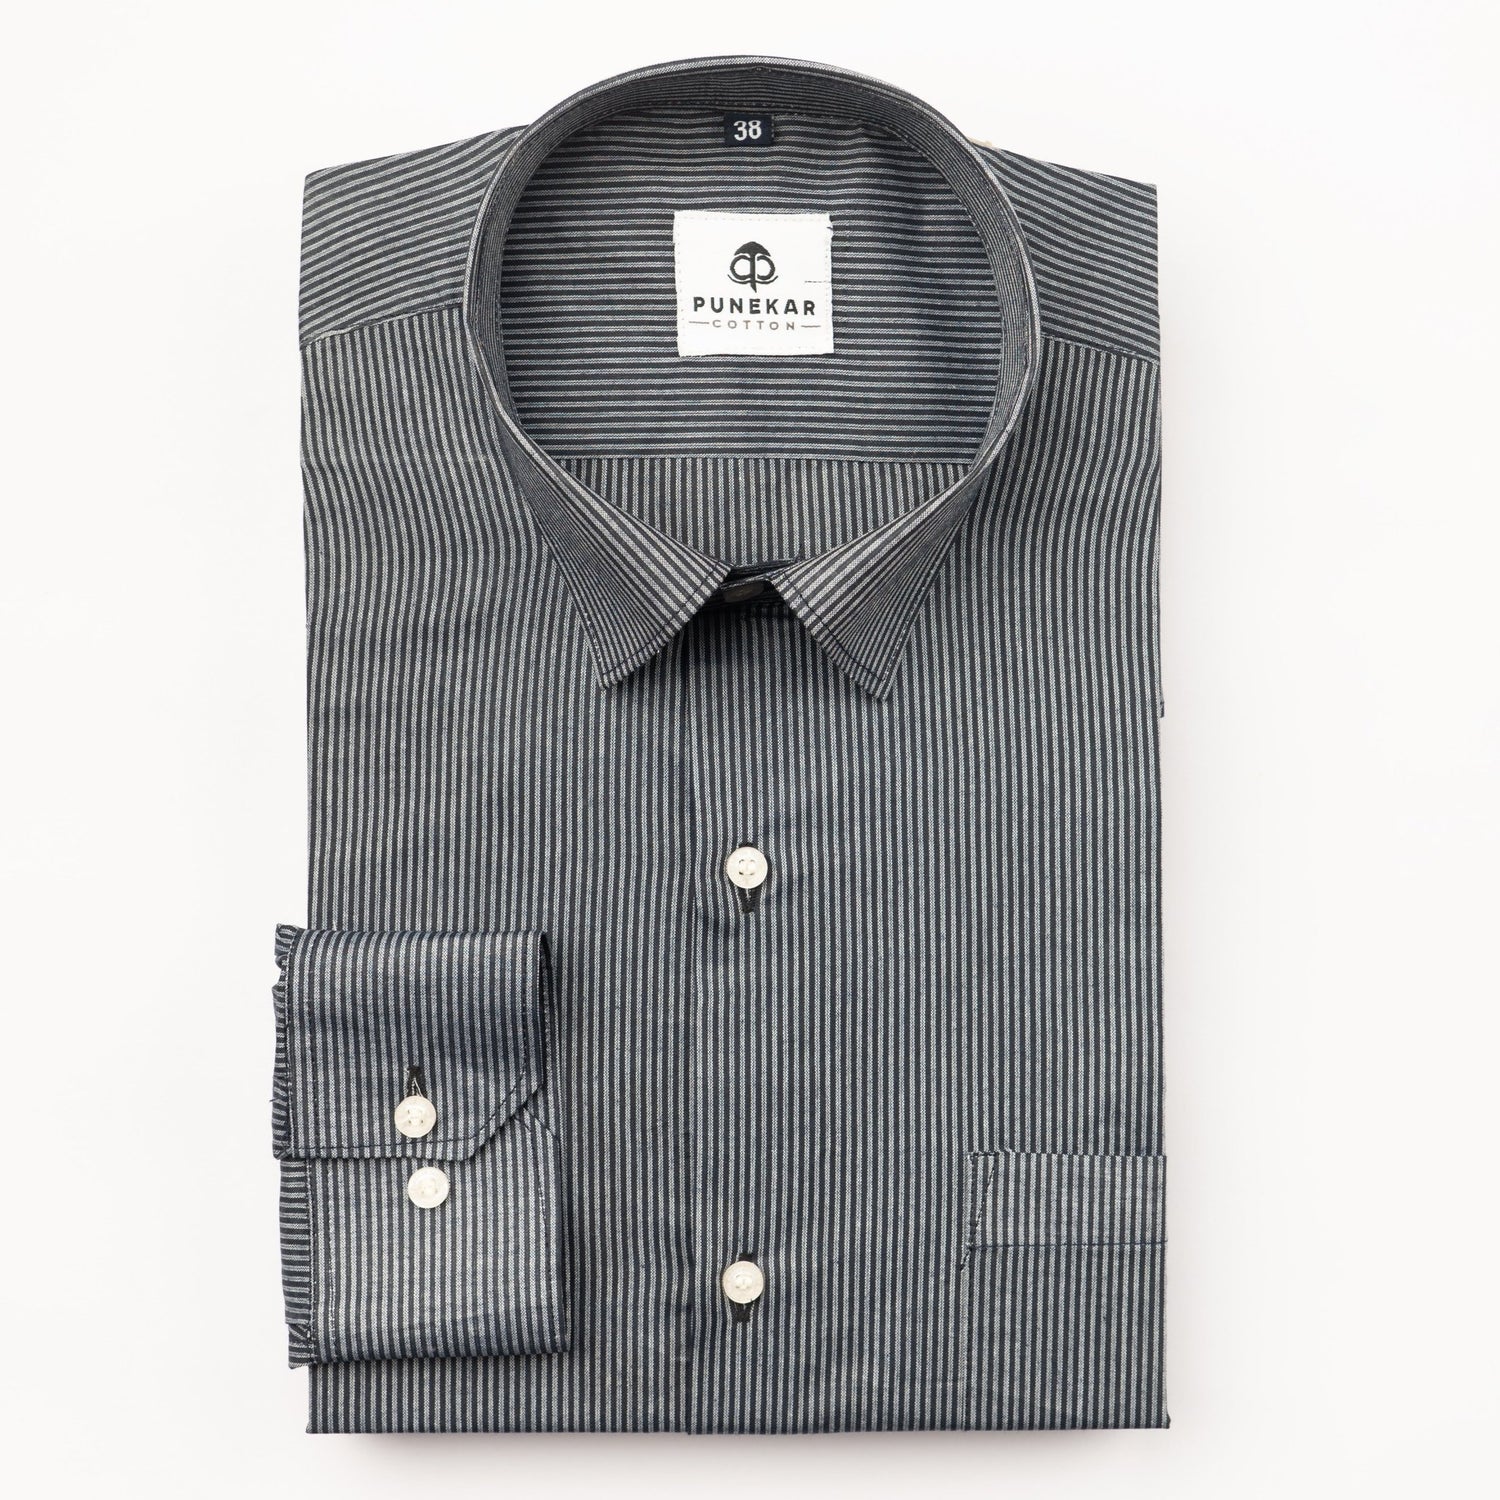 Black Color Lining Paper Cotton Shirts For Men (Copy) - Punekar Cotton